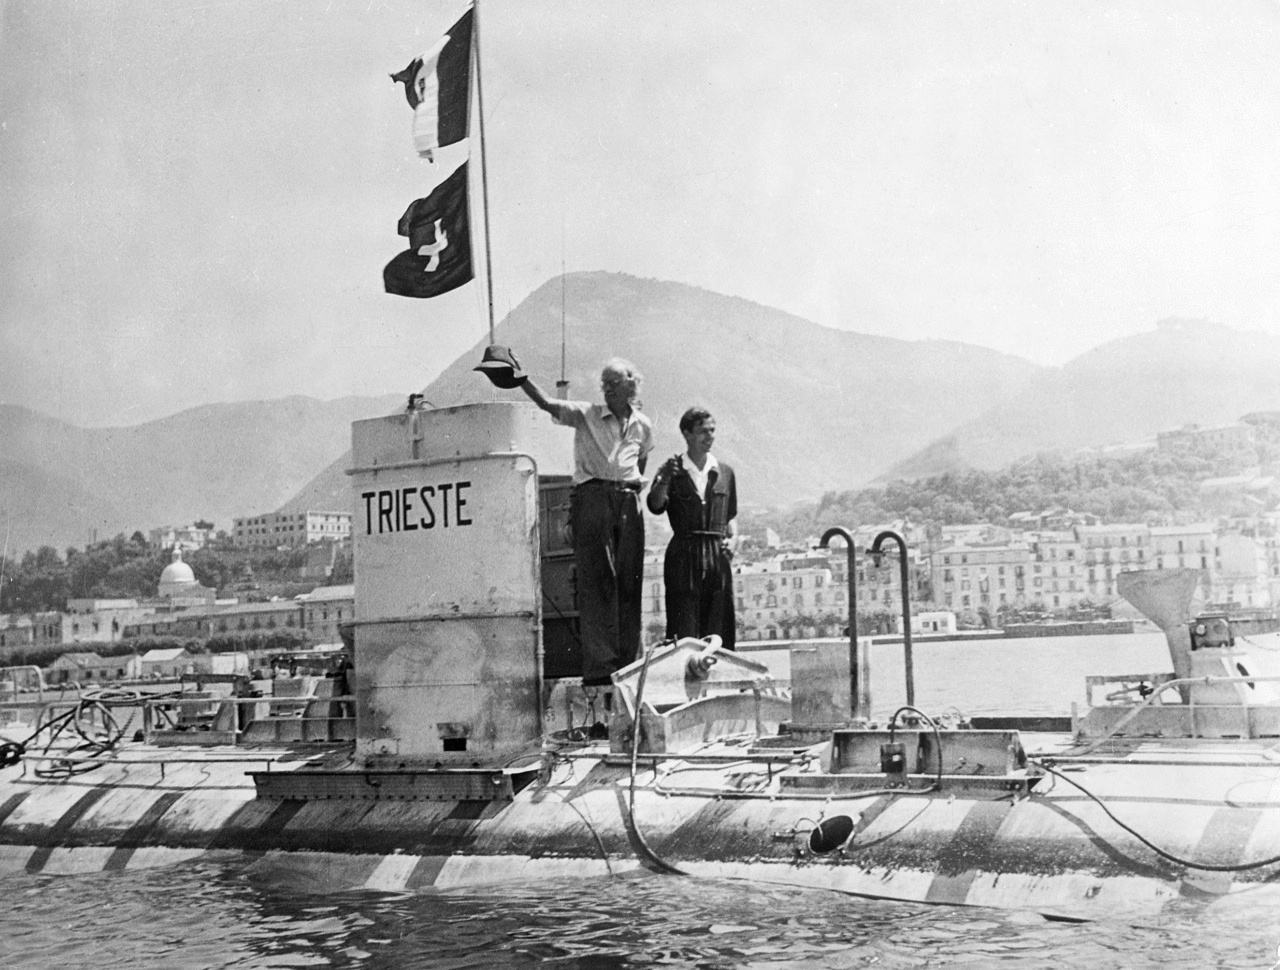 L'impresa del batiscafo Trieste - SEAPHOTO